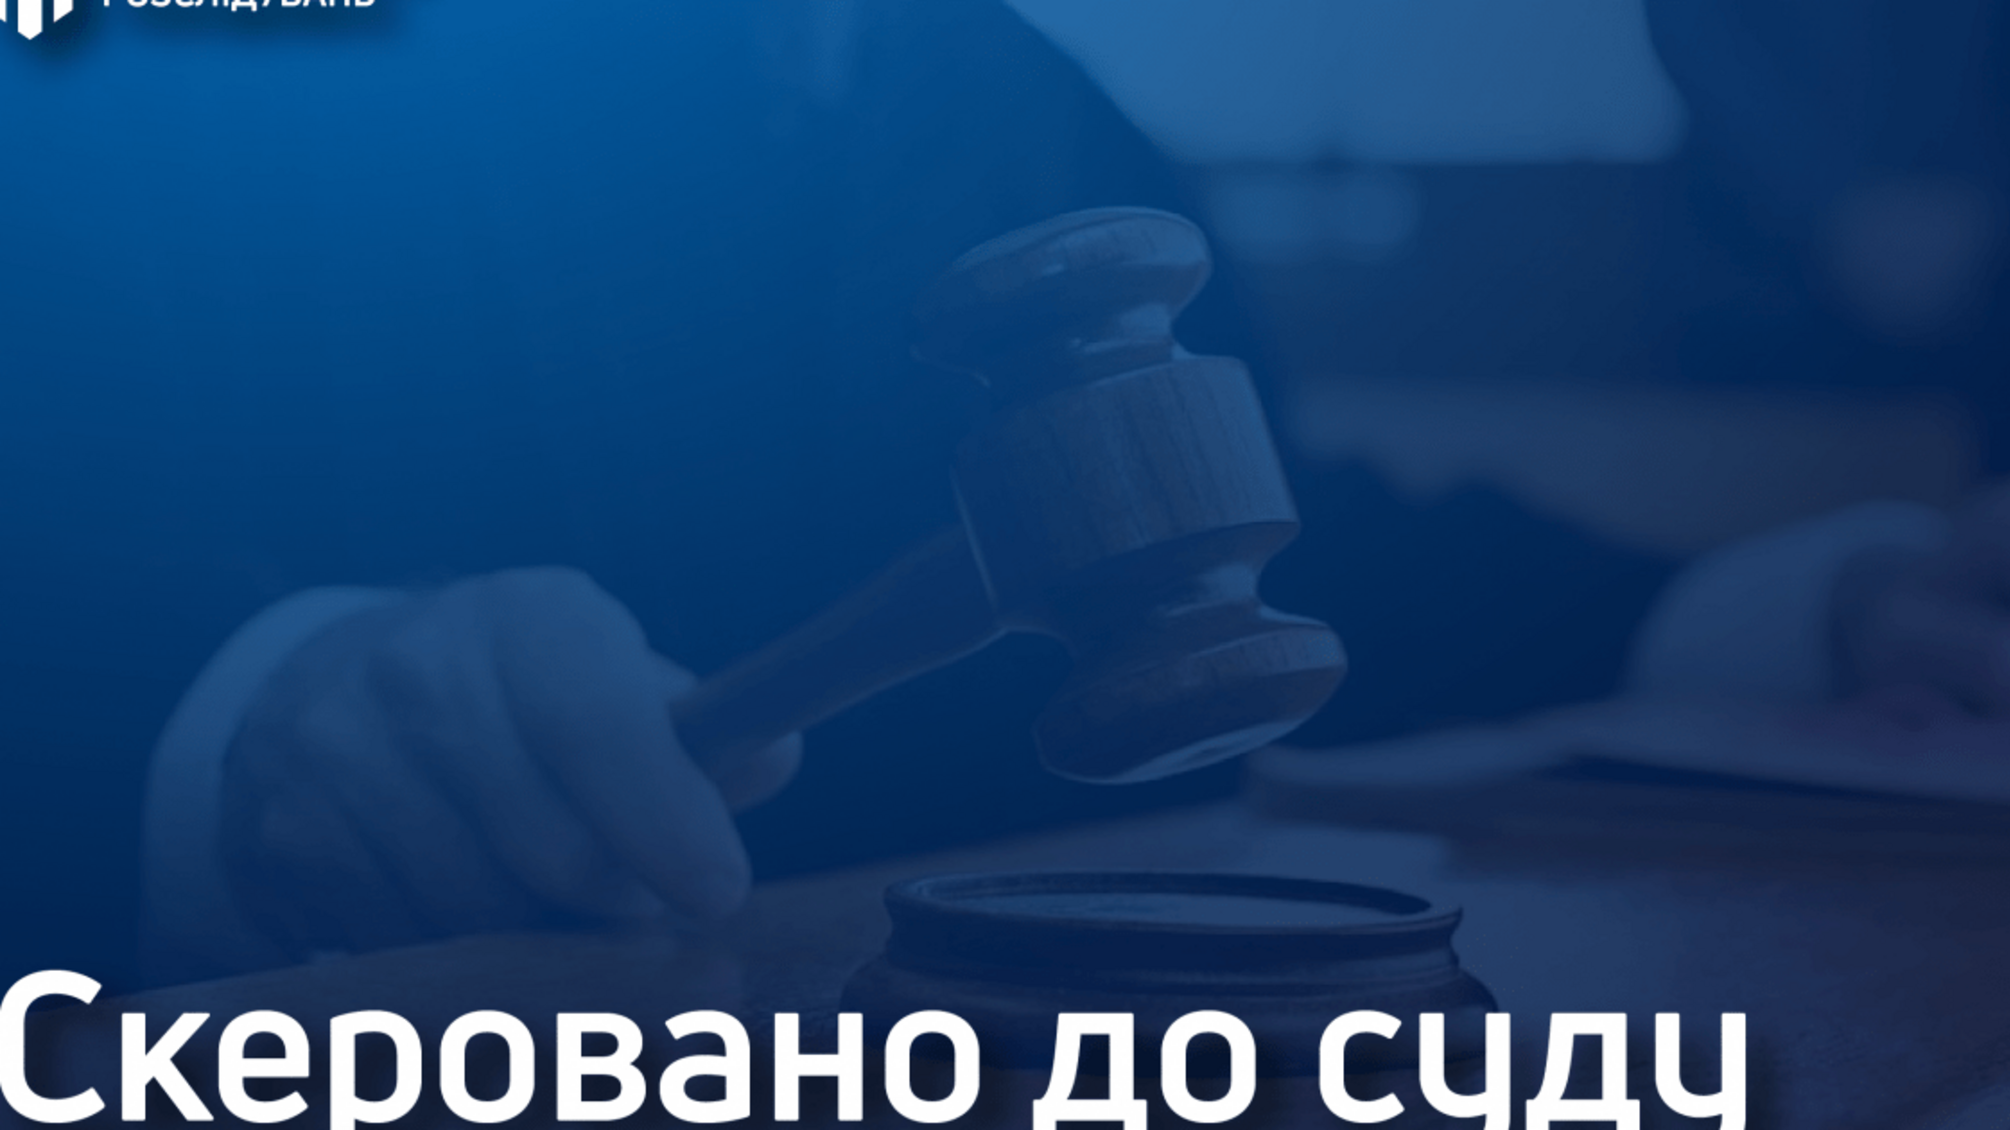 Побиття адвоката та його батька – інспектор патрульної поліції Києва постане перед судом